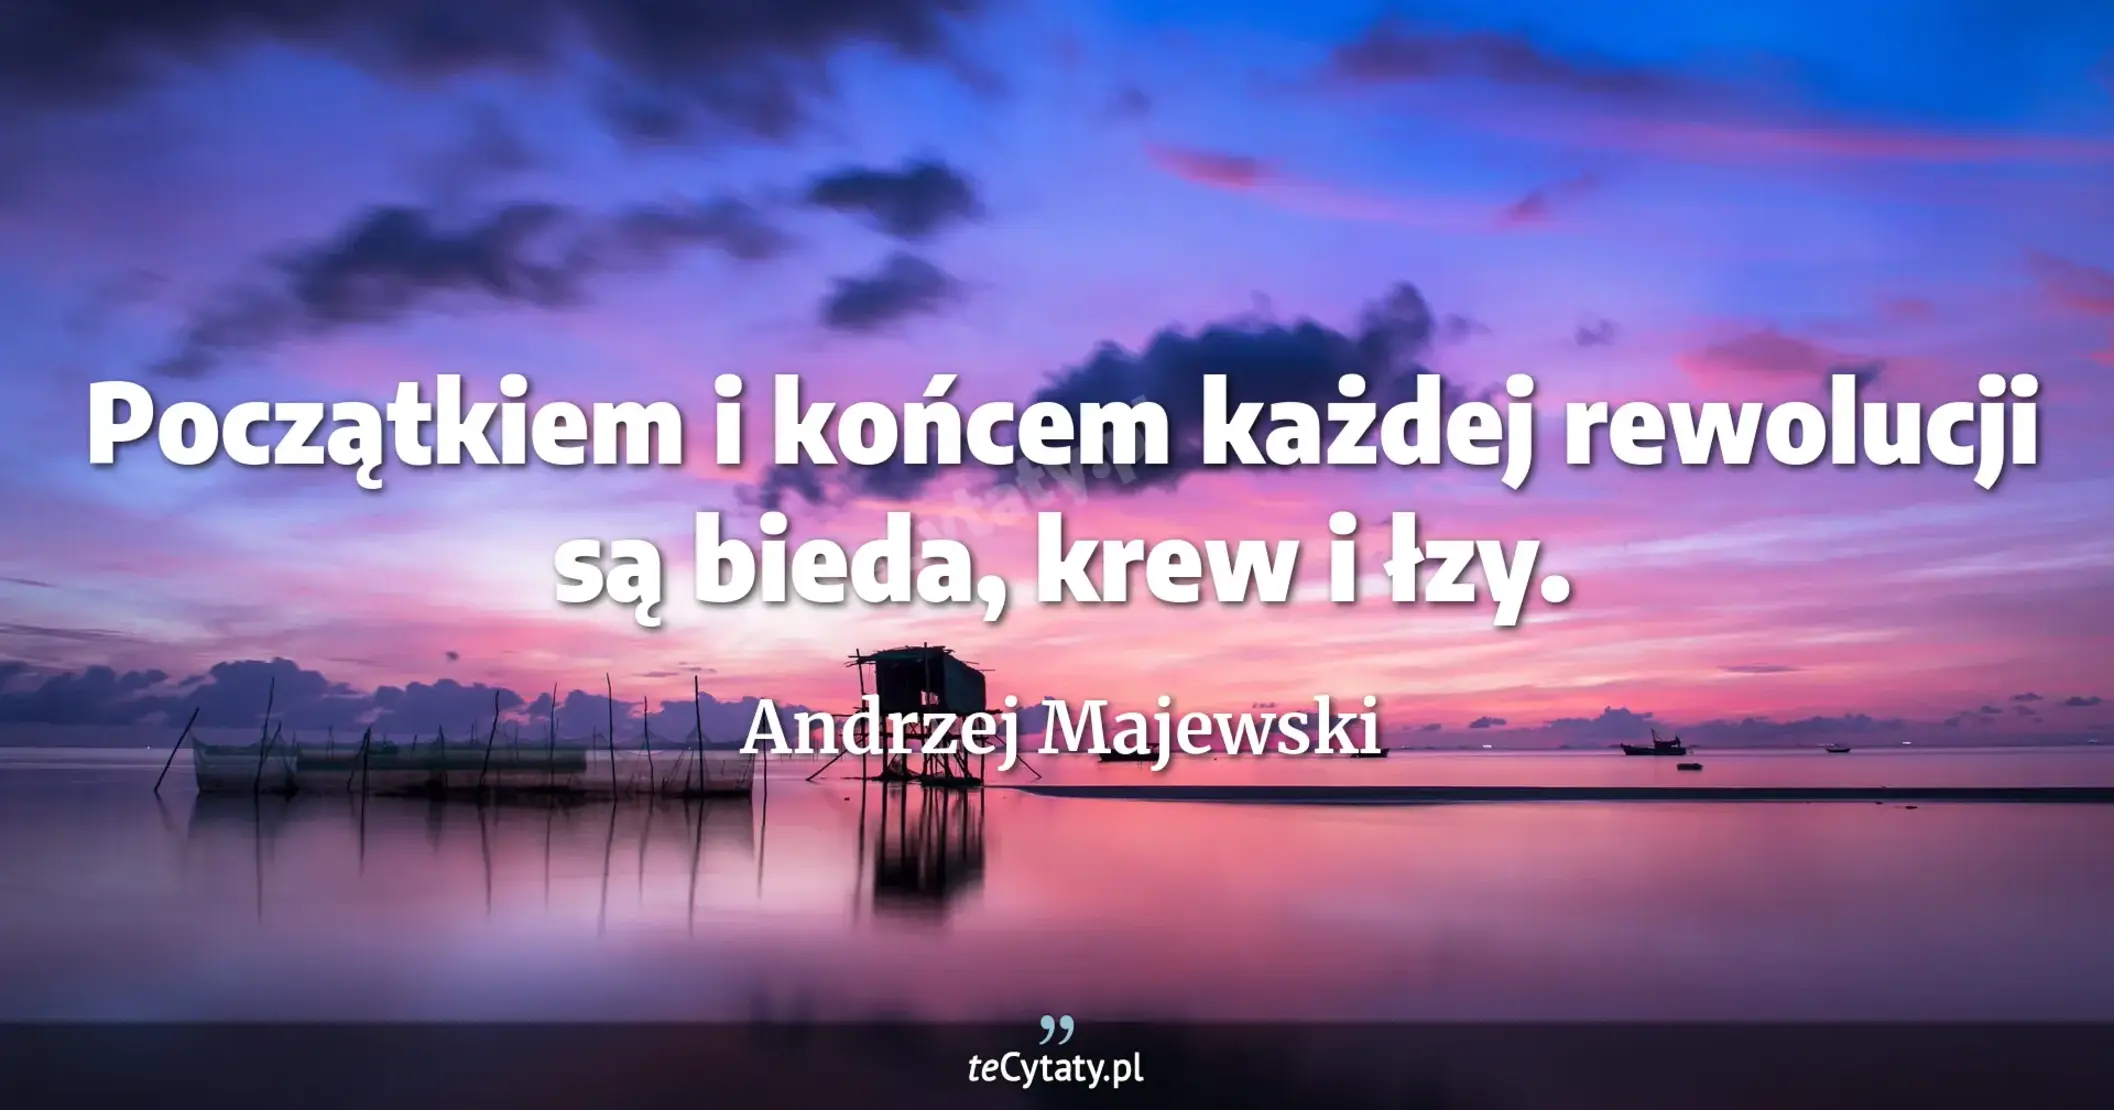 Początkiem i końcem każdej rewolucji są bieda, krew i łzy. - Andrzej Majewski